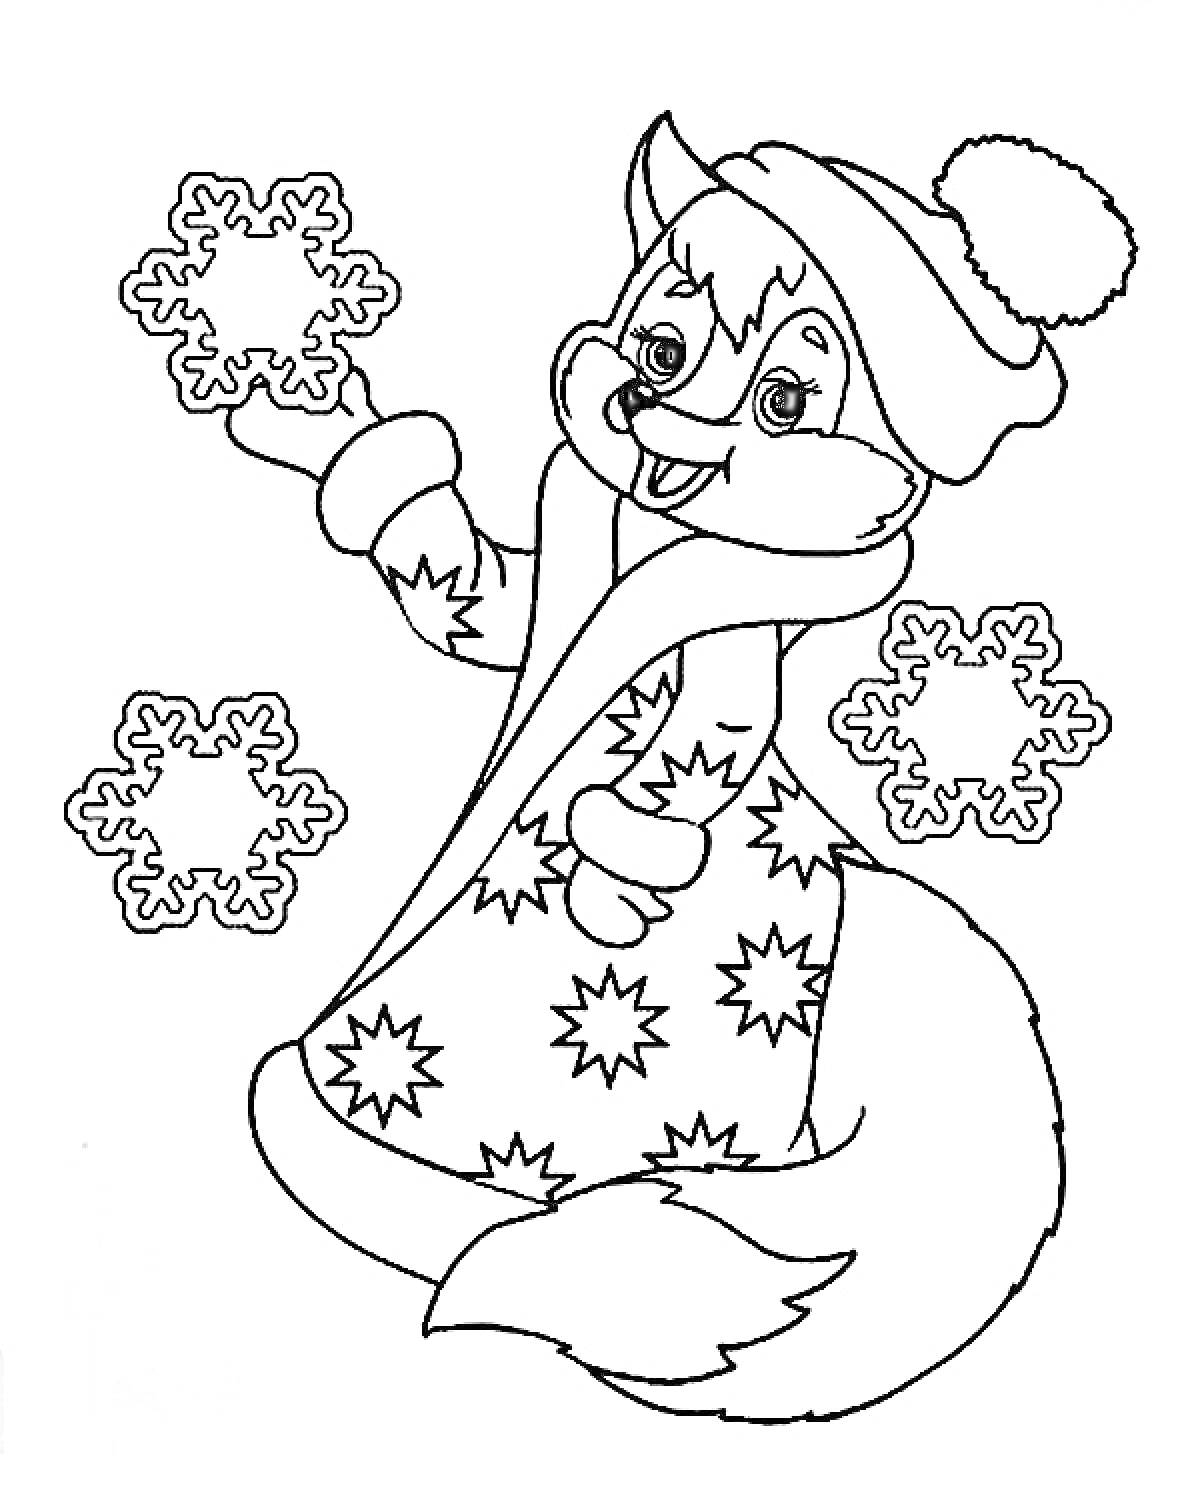 Раскраска Лиса в шапке и пальто с узором, держащая снежинку, три снежинки вокруг